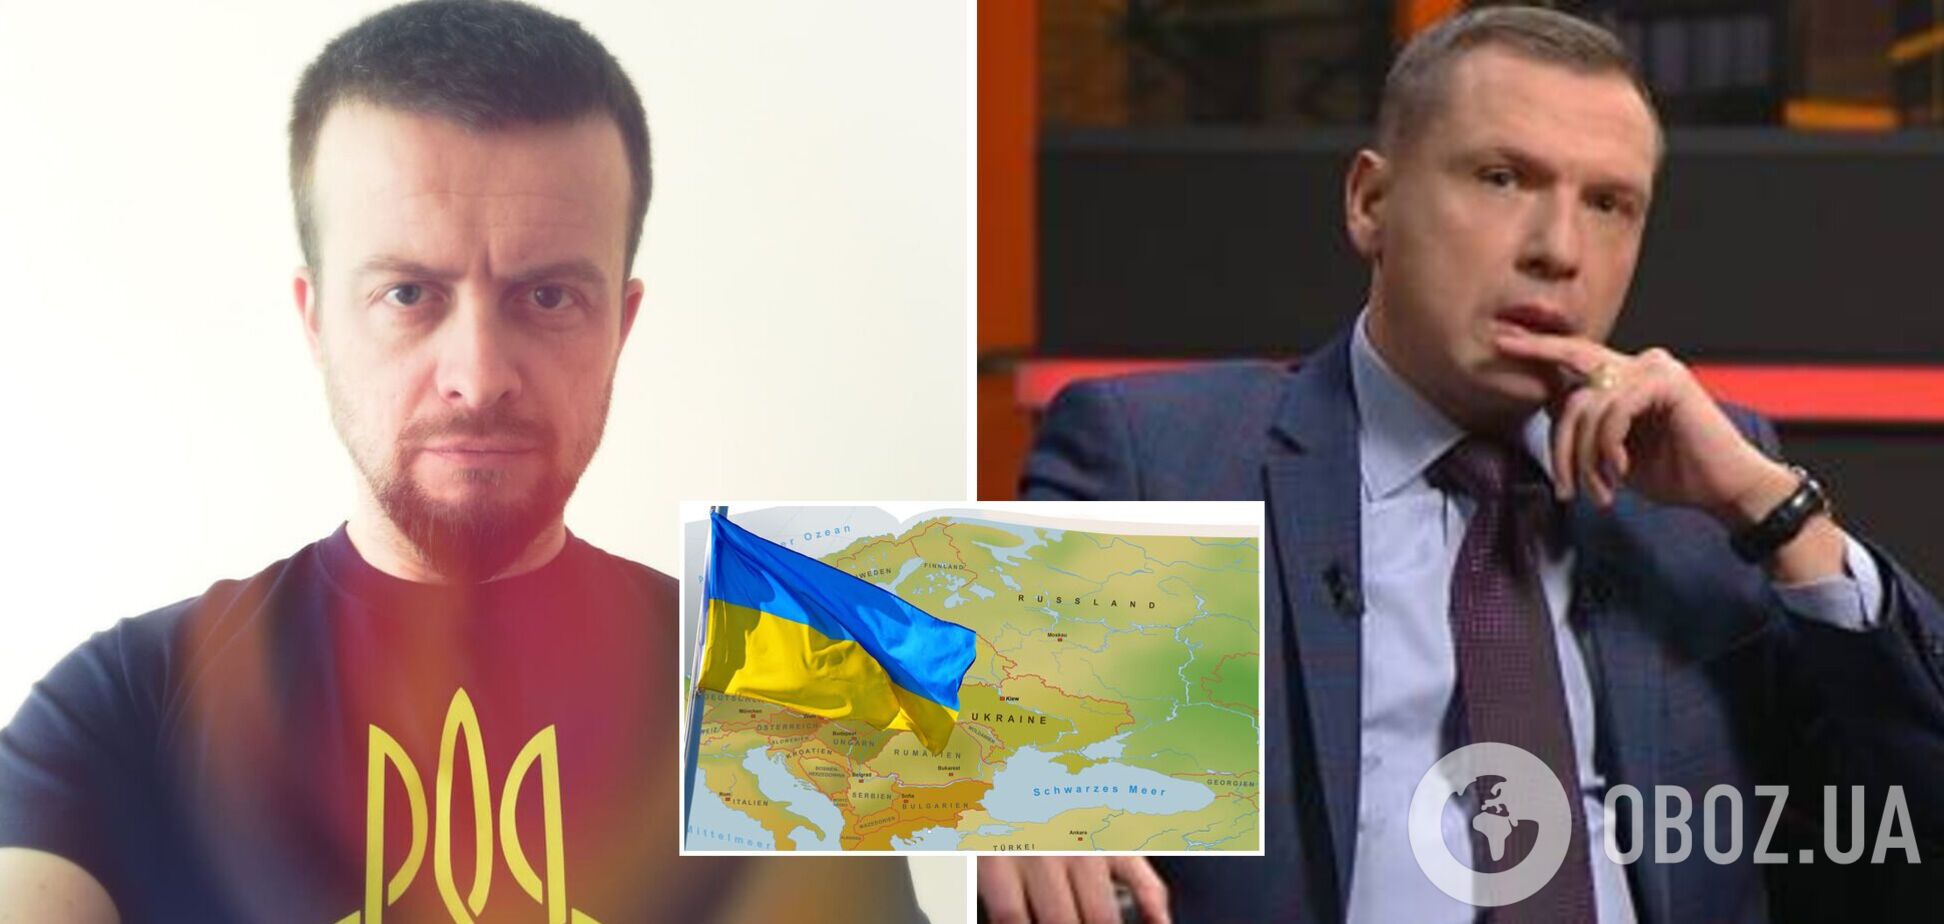 Белорусский пропагандист Щекин не смог объяснить свои слова, что Украины не существует, и 'напал' на ведущего